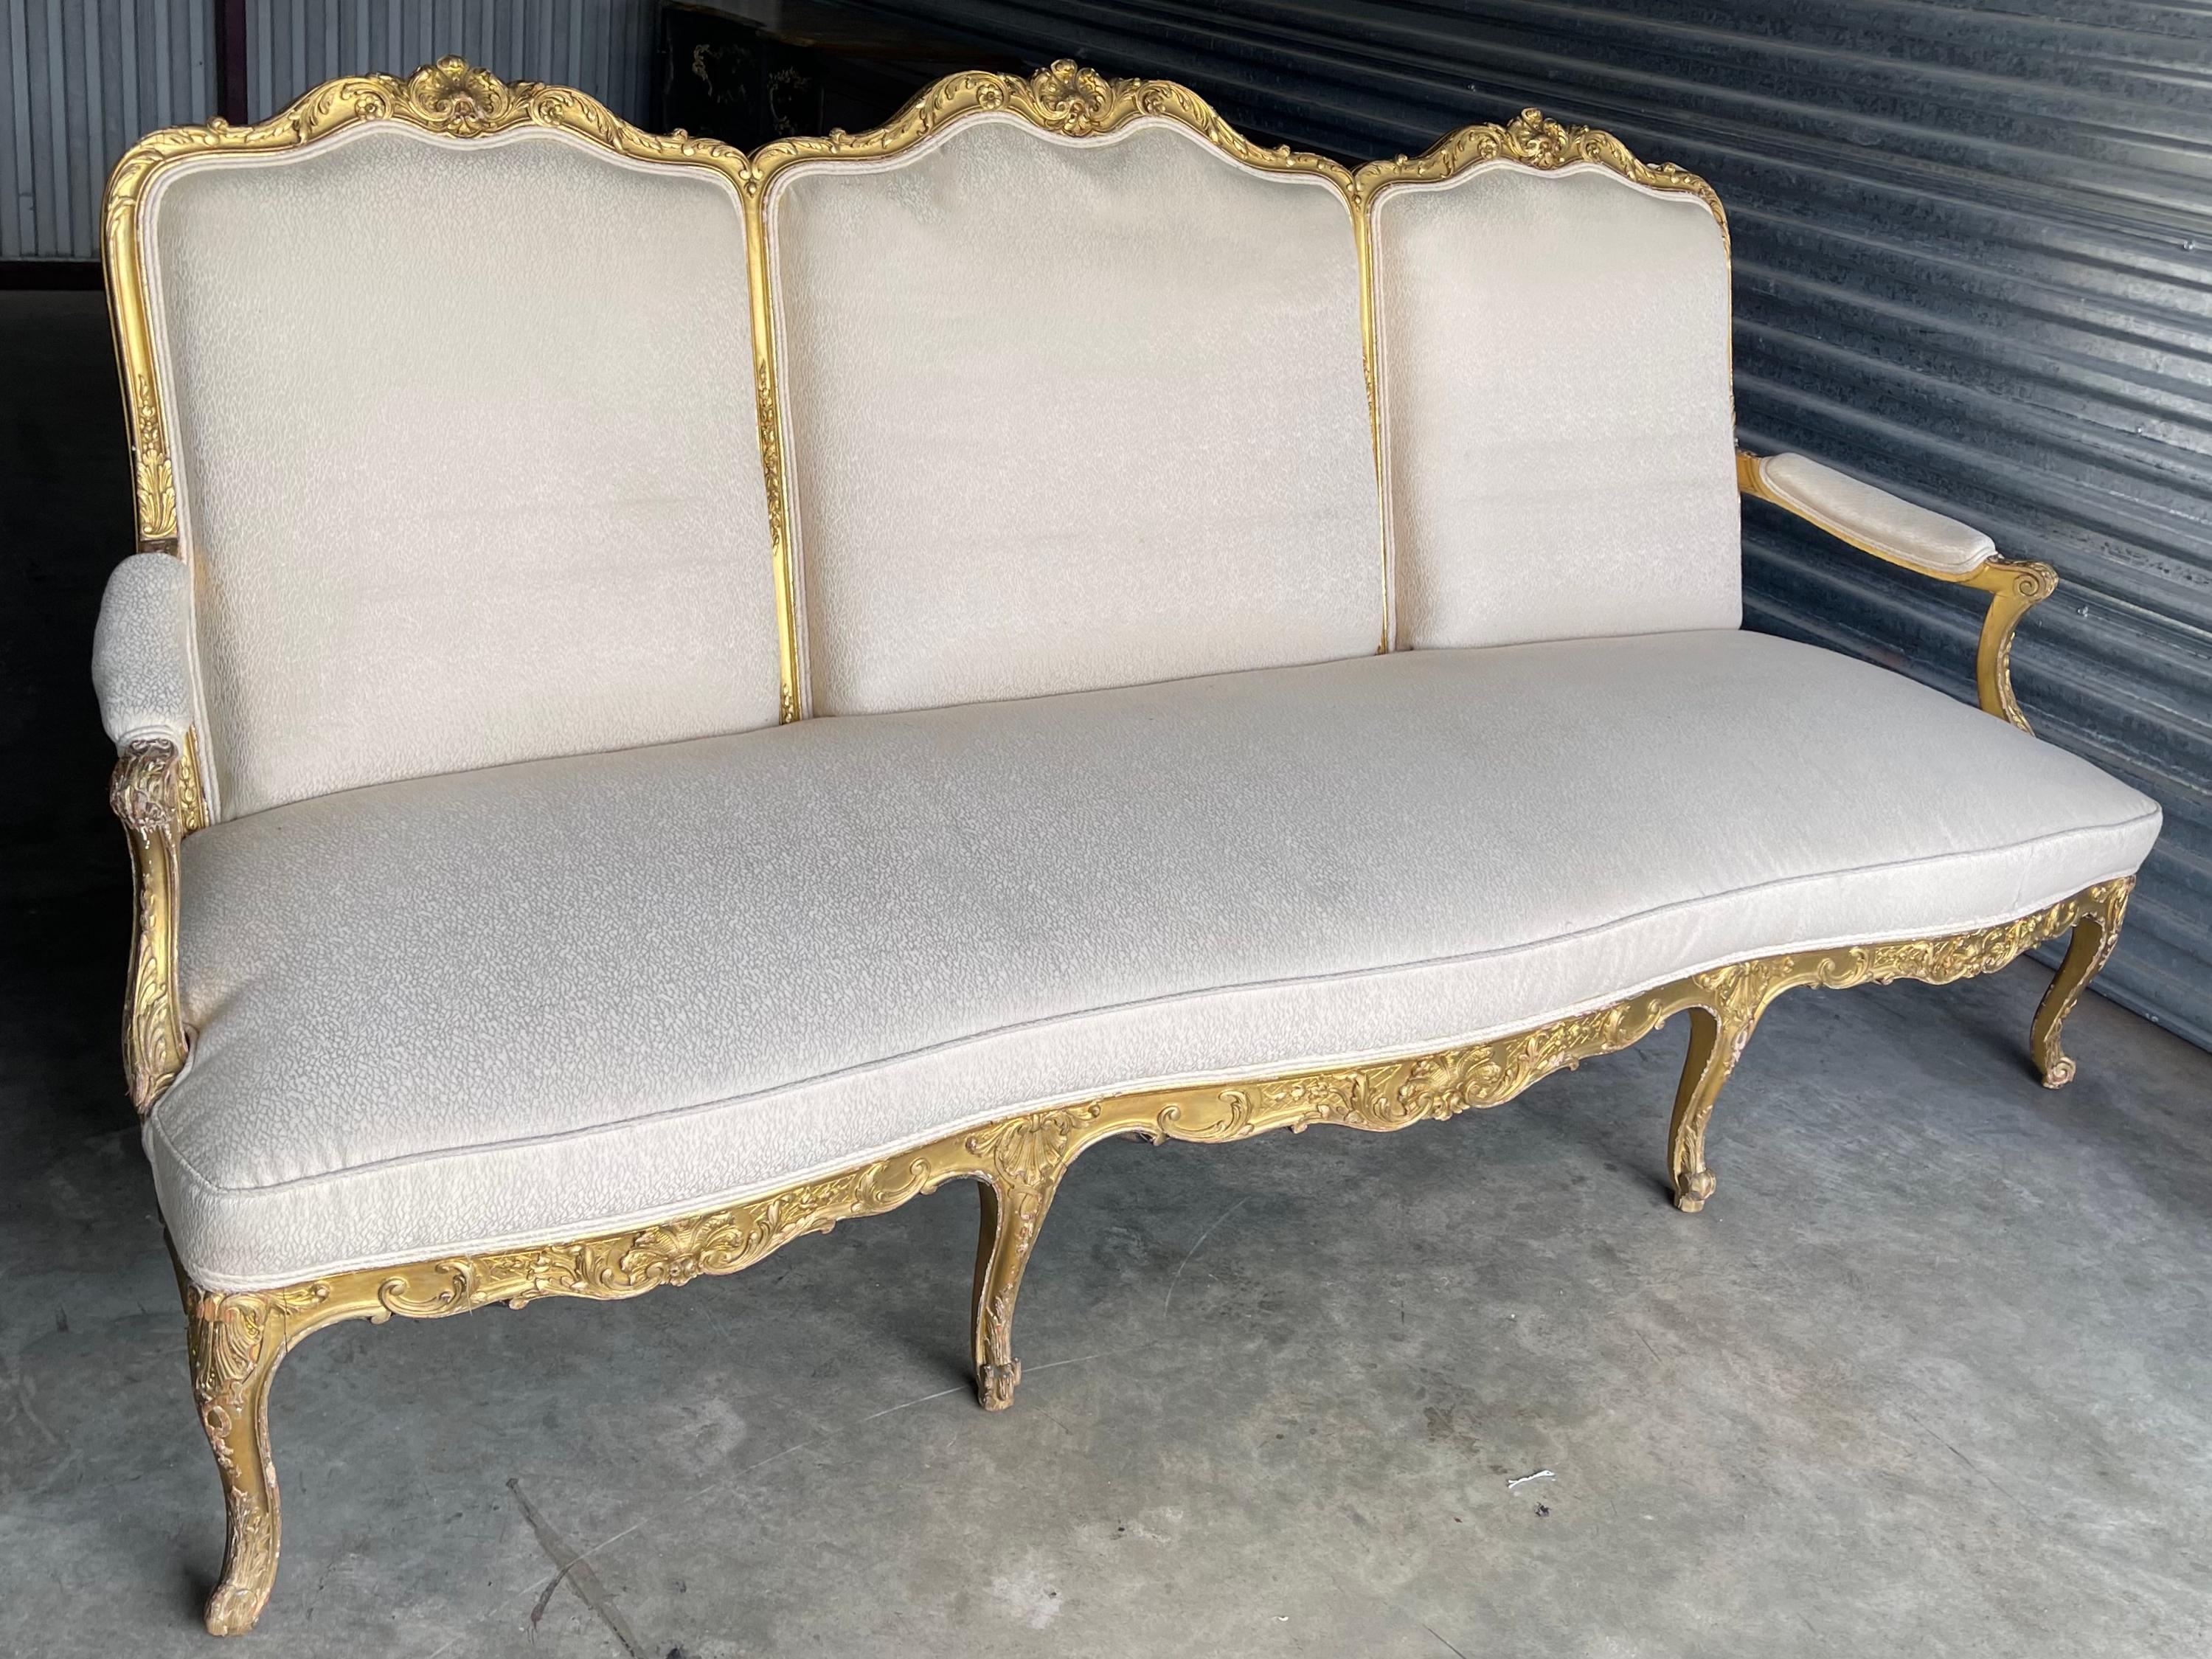 Il s'agit d'un joli canapé ancien en bois doré sculpté de style Louis XV. Notez le dos en coquillage sculpté ! Le tissu vintage présente une certaine usure mais n'est pas troué.